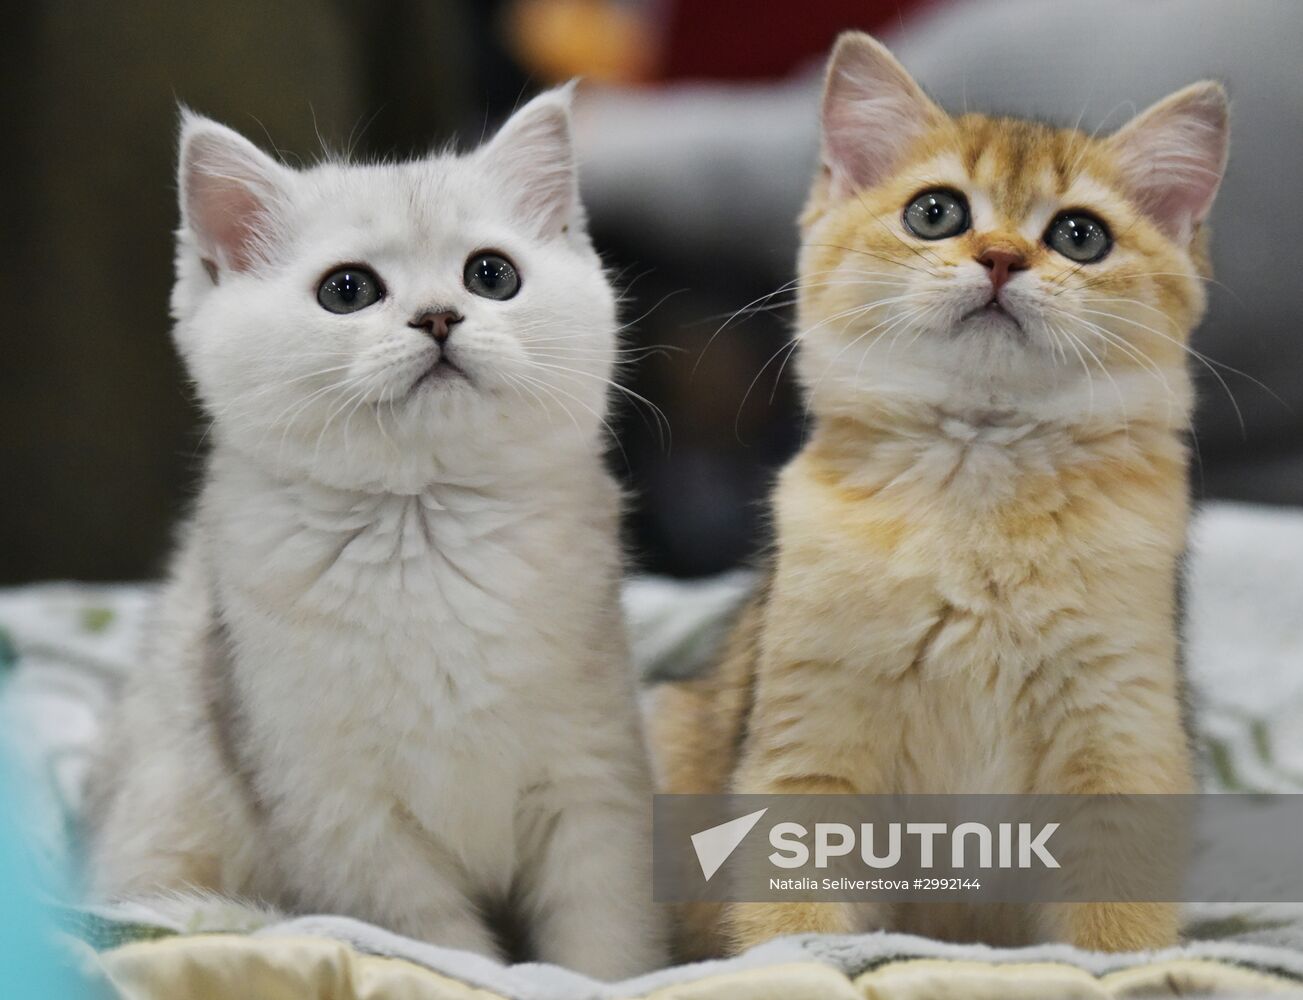 Zimnij Kubok Kot-Info cat exhibition in Moscow